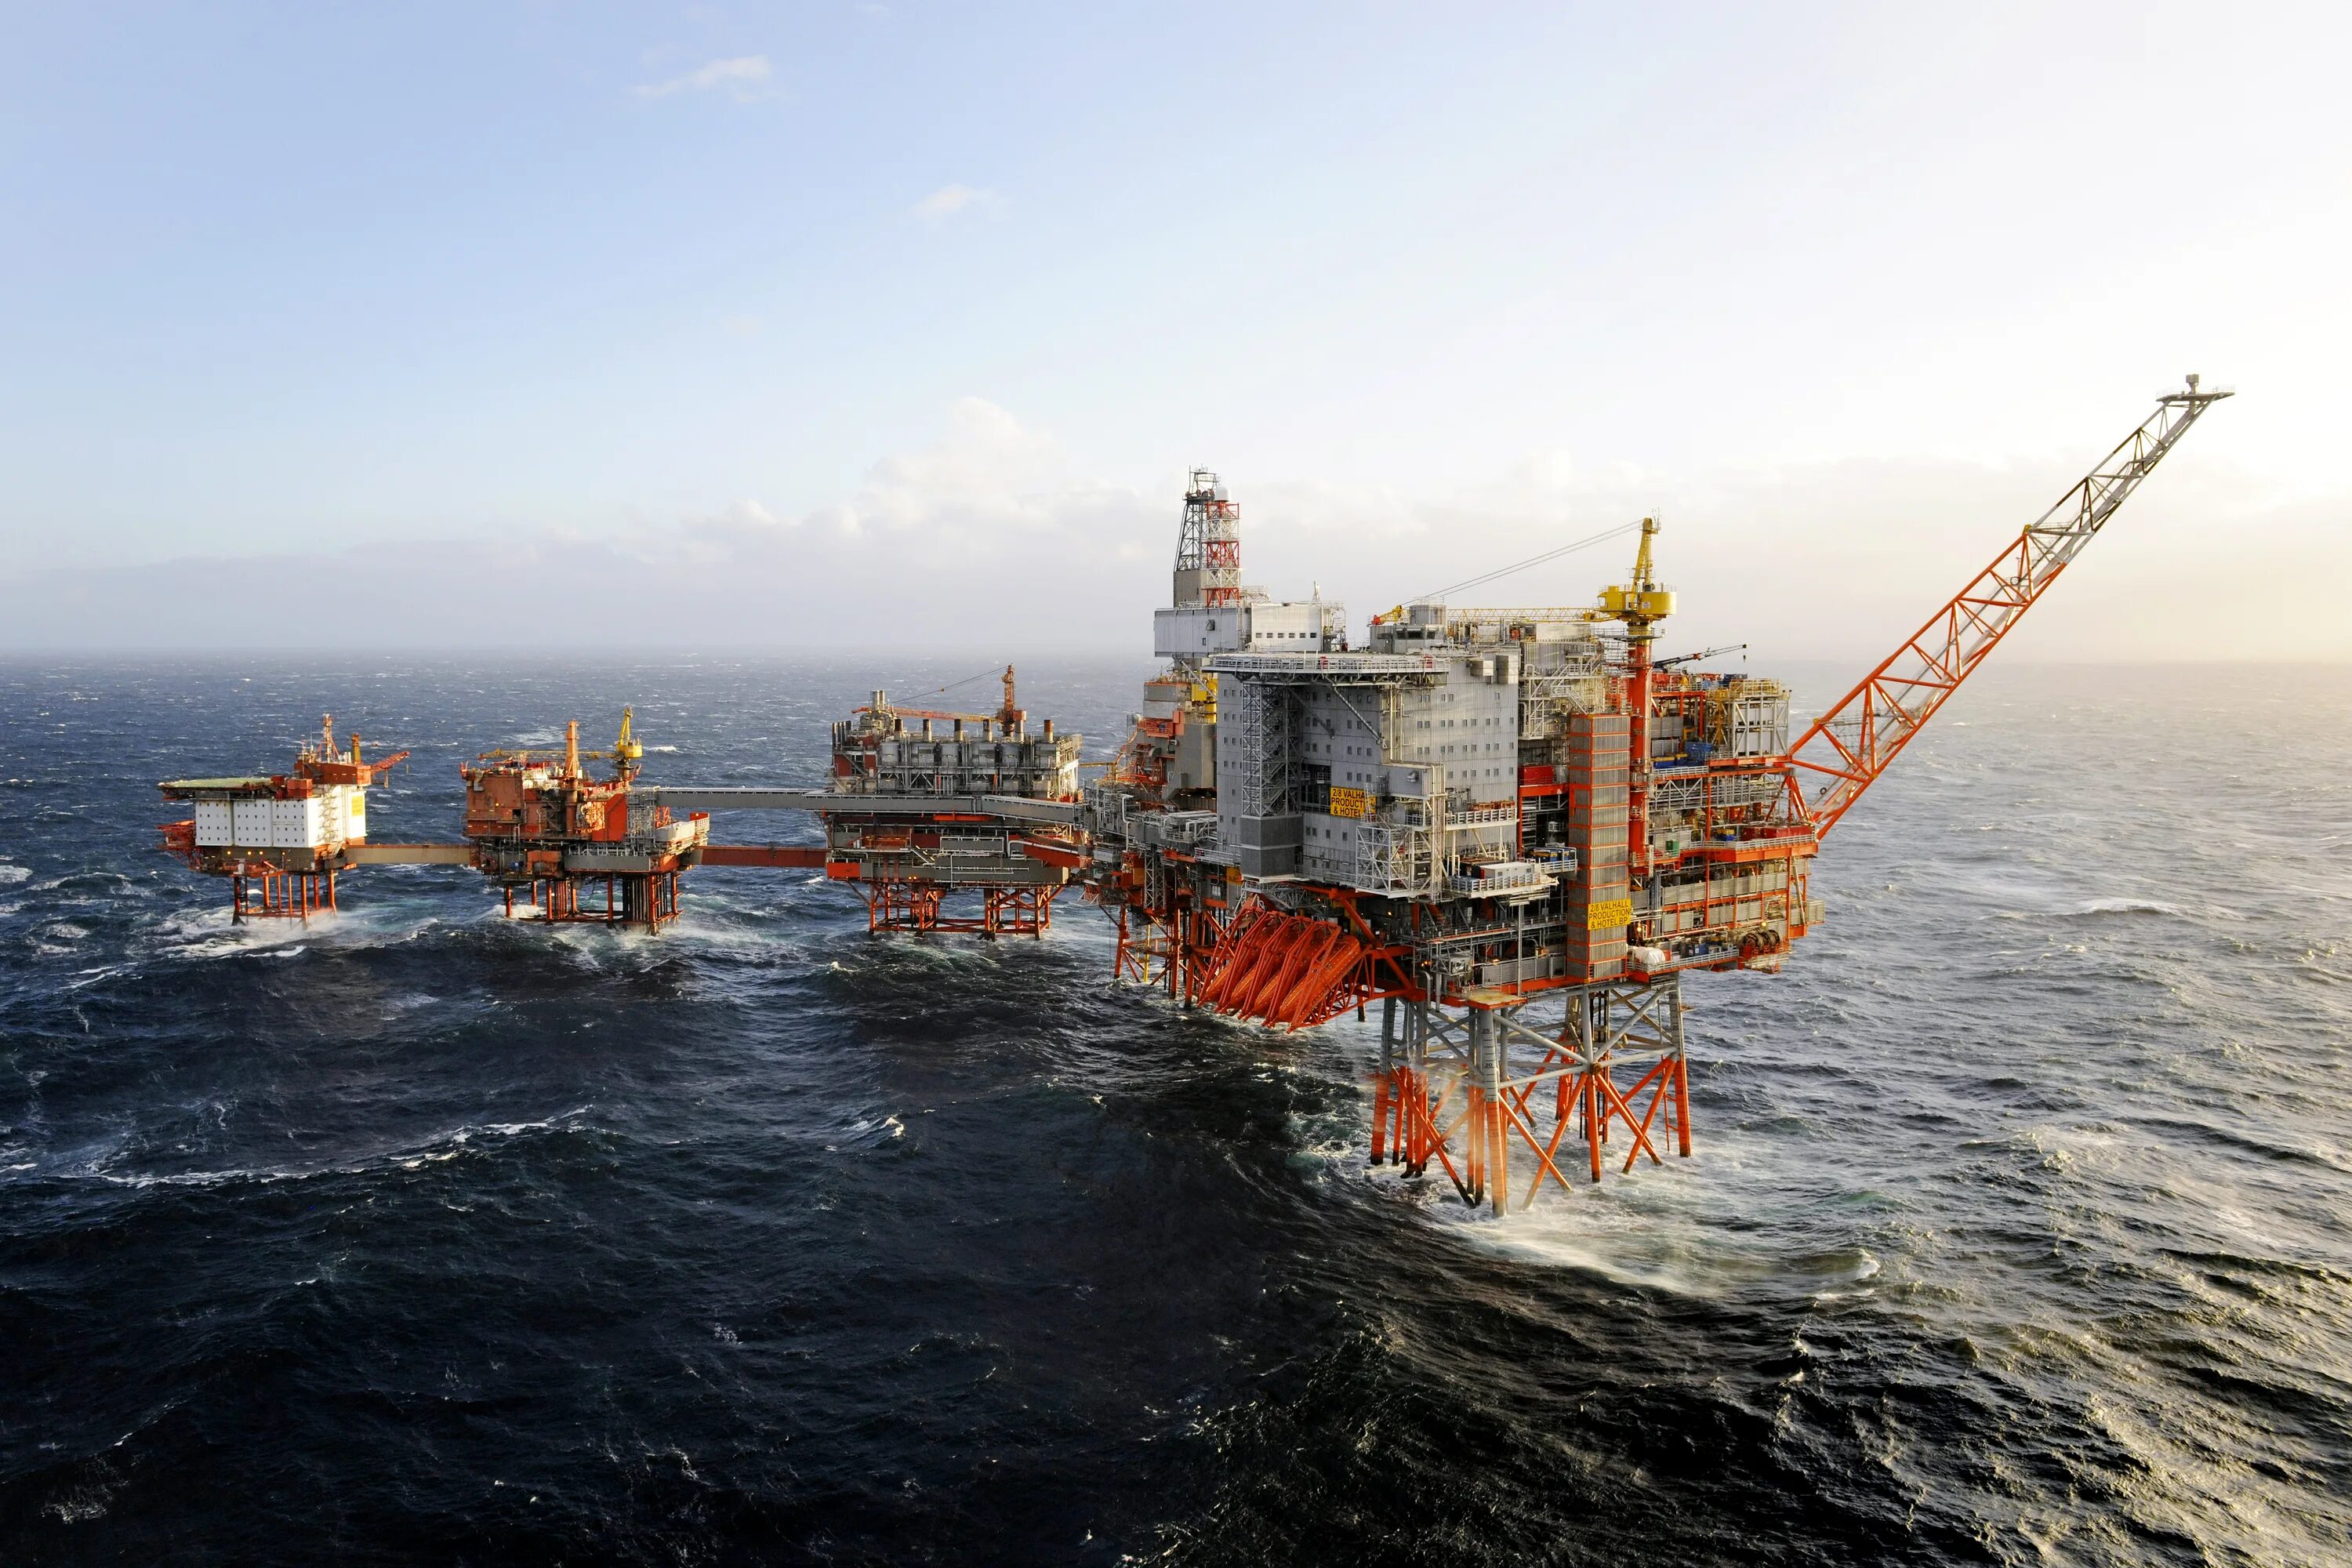 Нефтяная платформа "Дропнер" 1995. Хайберния нефтяная платформа. Нефтедобыча в Северном море. Баренцево море нефтедобыча.